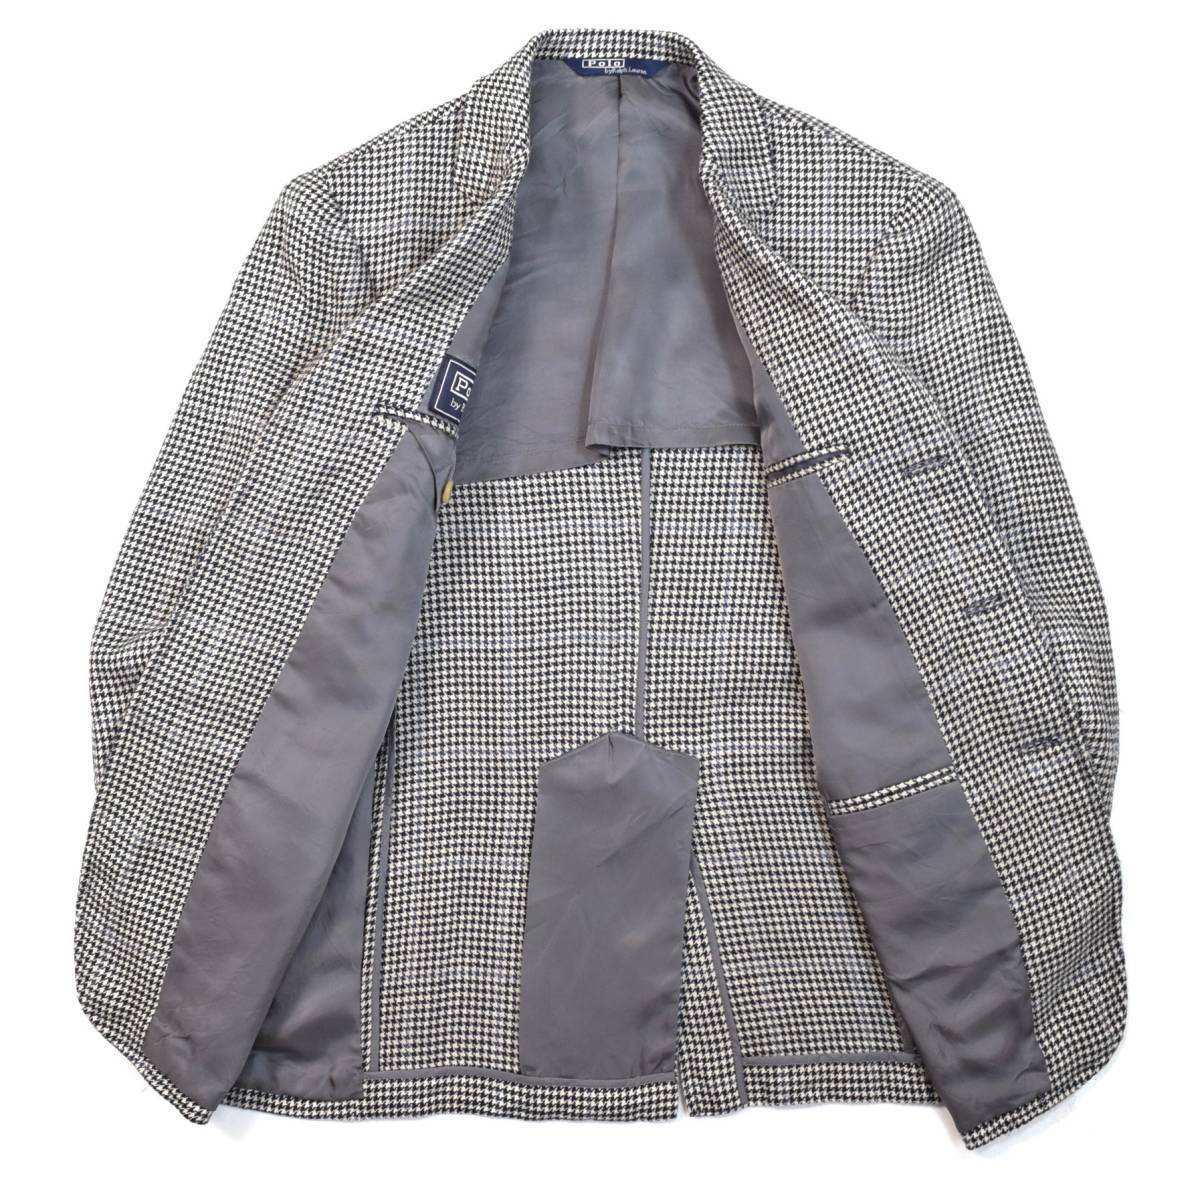 大量注文受付 美品 ポロラルフローレン ハウンドトゥース テーラードジャケット イタリア製 テーラードジャケット